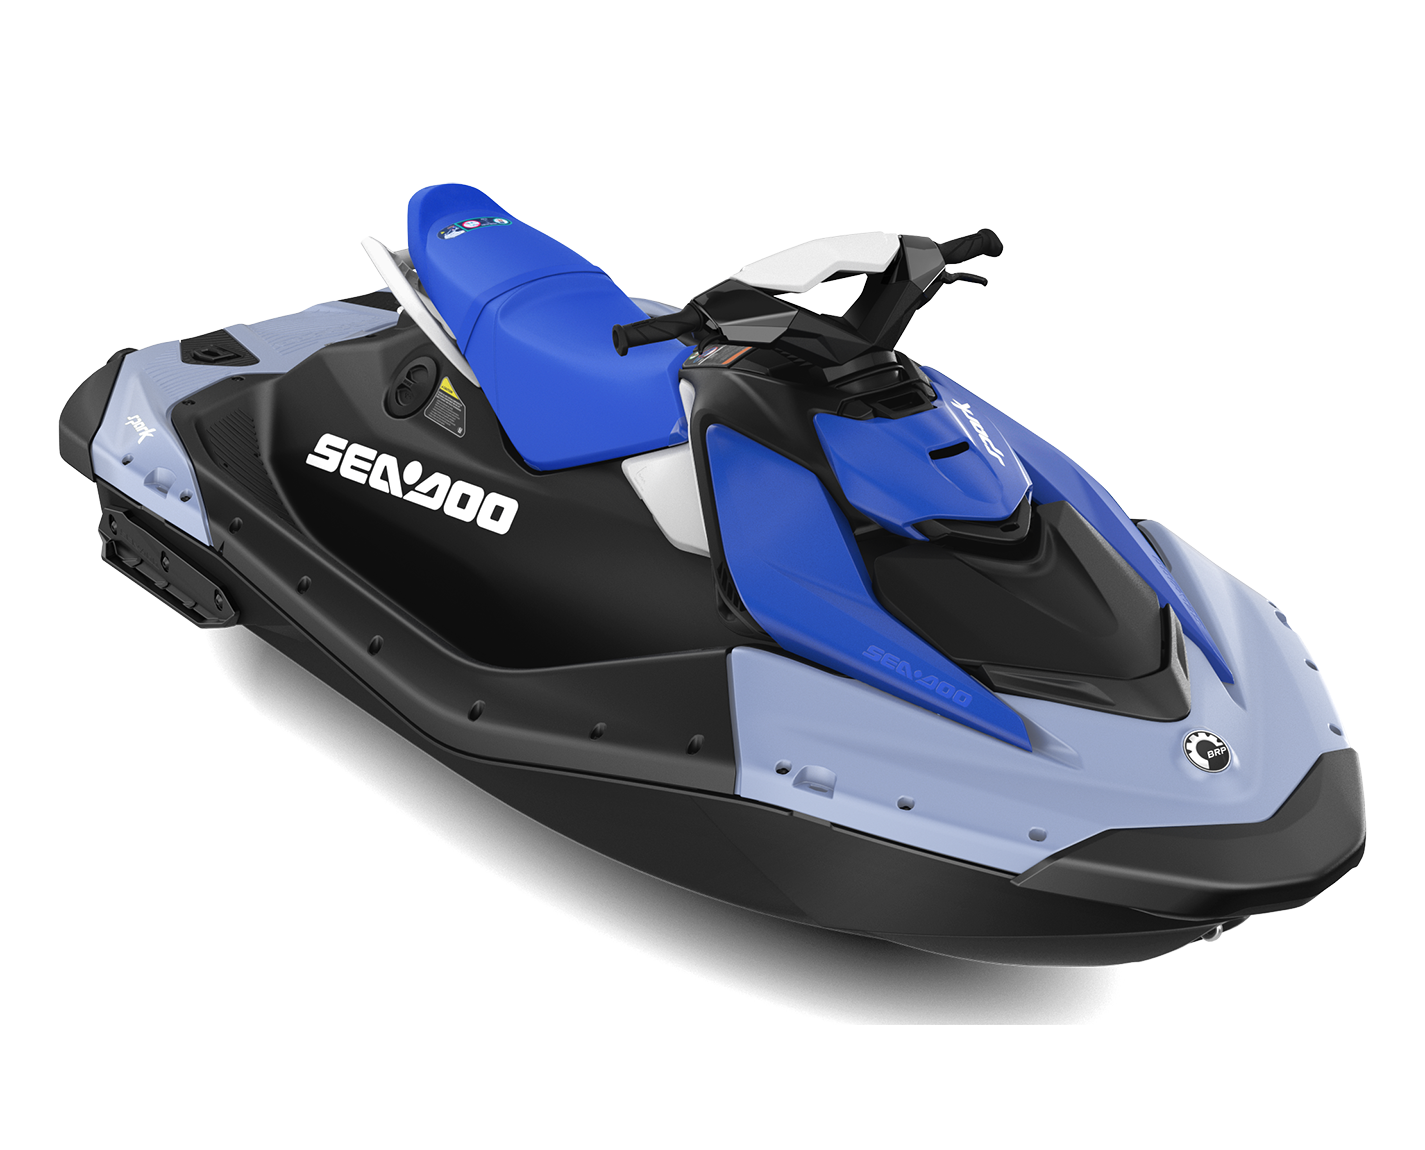 sea doo spark 2024, jet ski pour deux personnes, motomarine sans taxe, jouer dans l'eau, promenade en mer, bateau, permis bateau